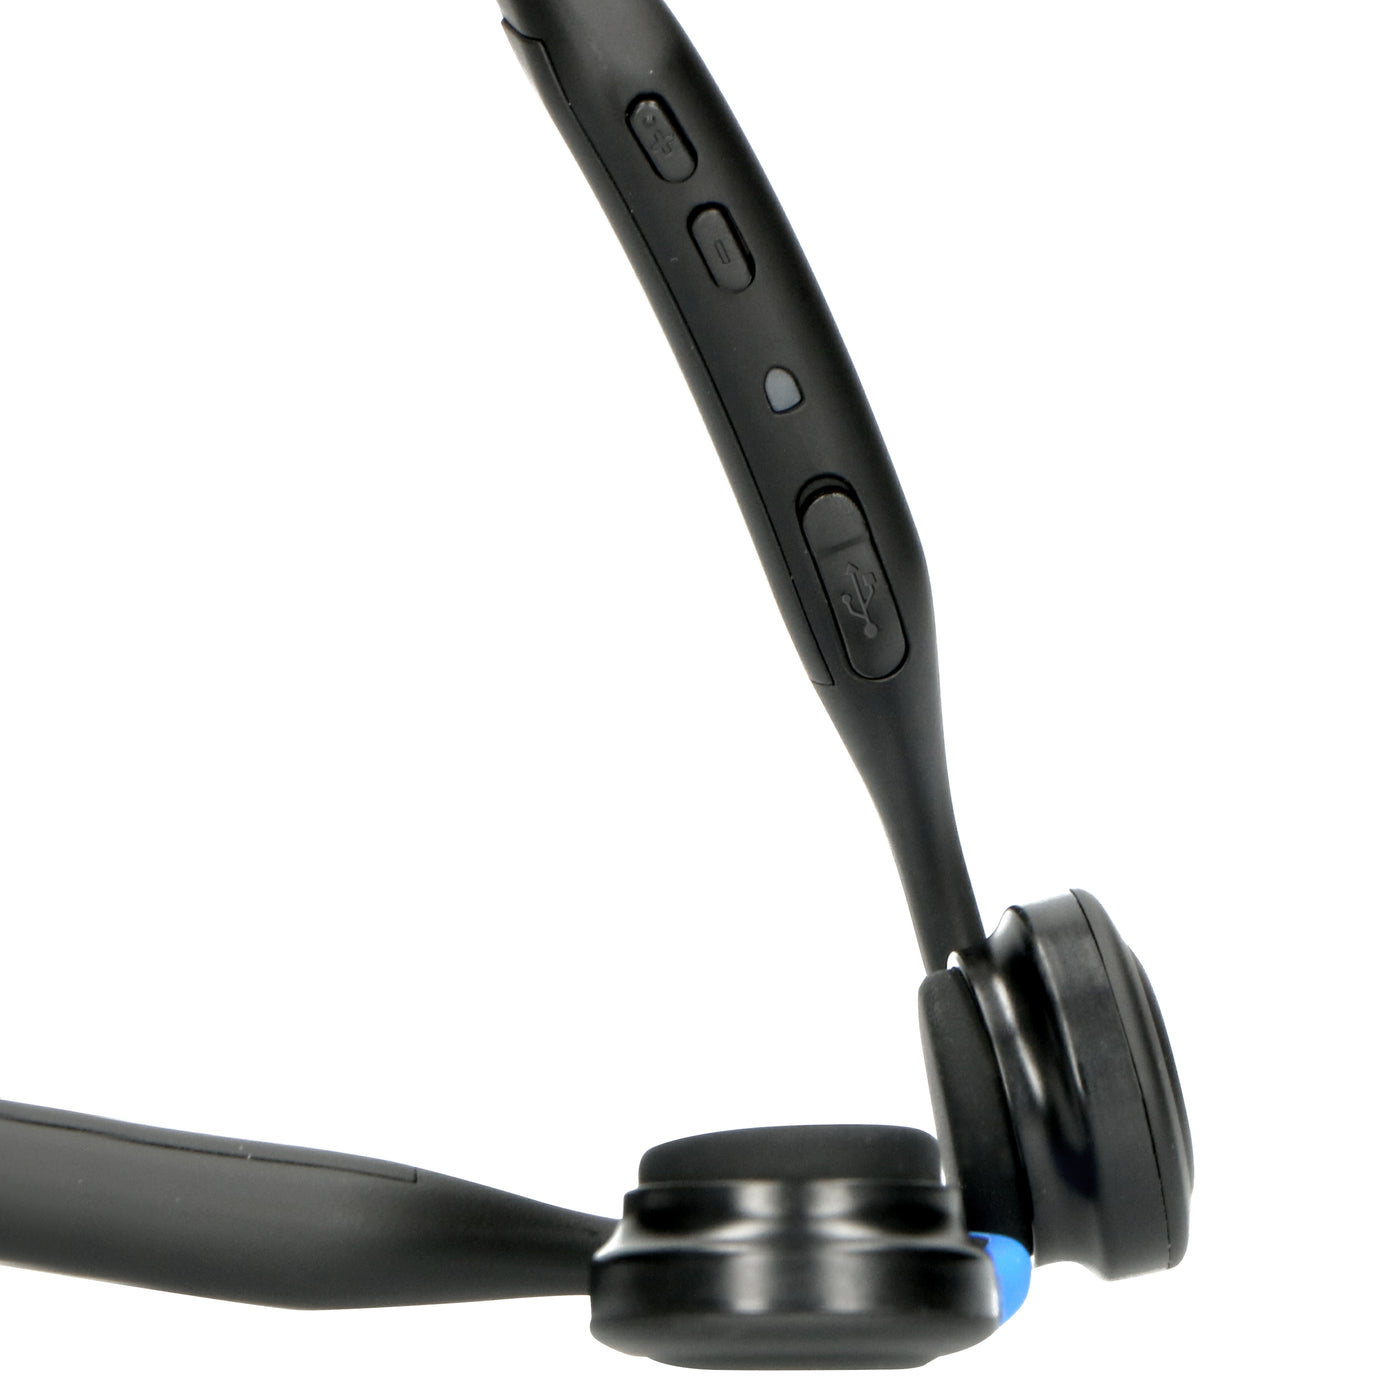 Lenco BCH-1000 - Słuchawki kostne Bluetooth®, niebieskie 